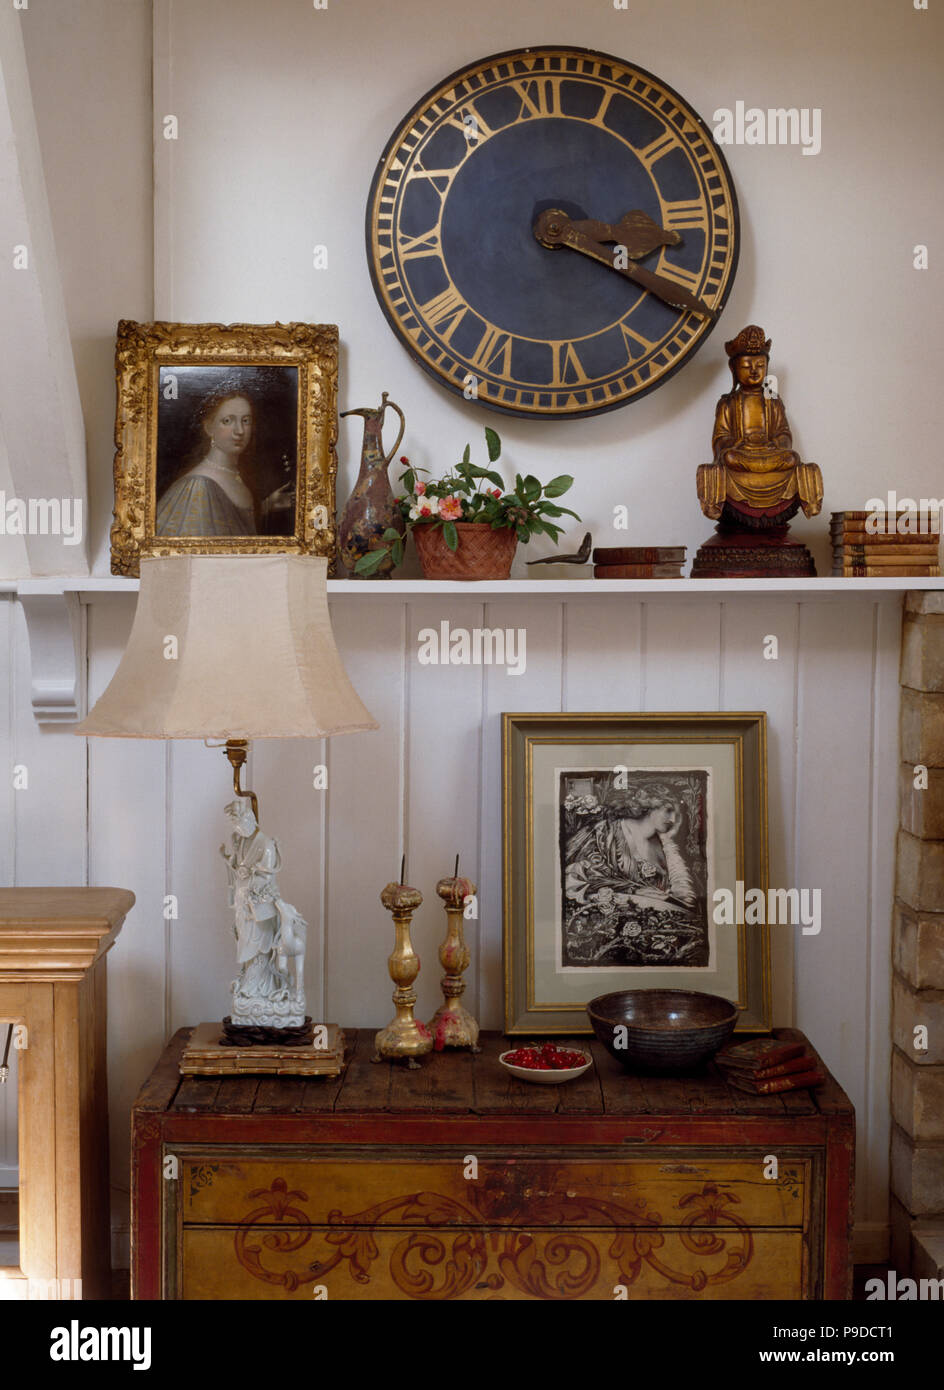 Runde Uhr auf Wand über Regal mit kleinen Buddha und goldgerahmten Bild  Stockfotografie - Alamy